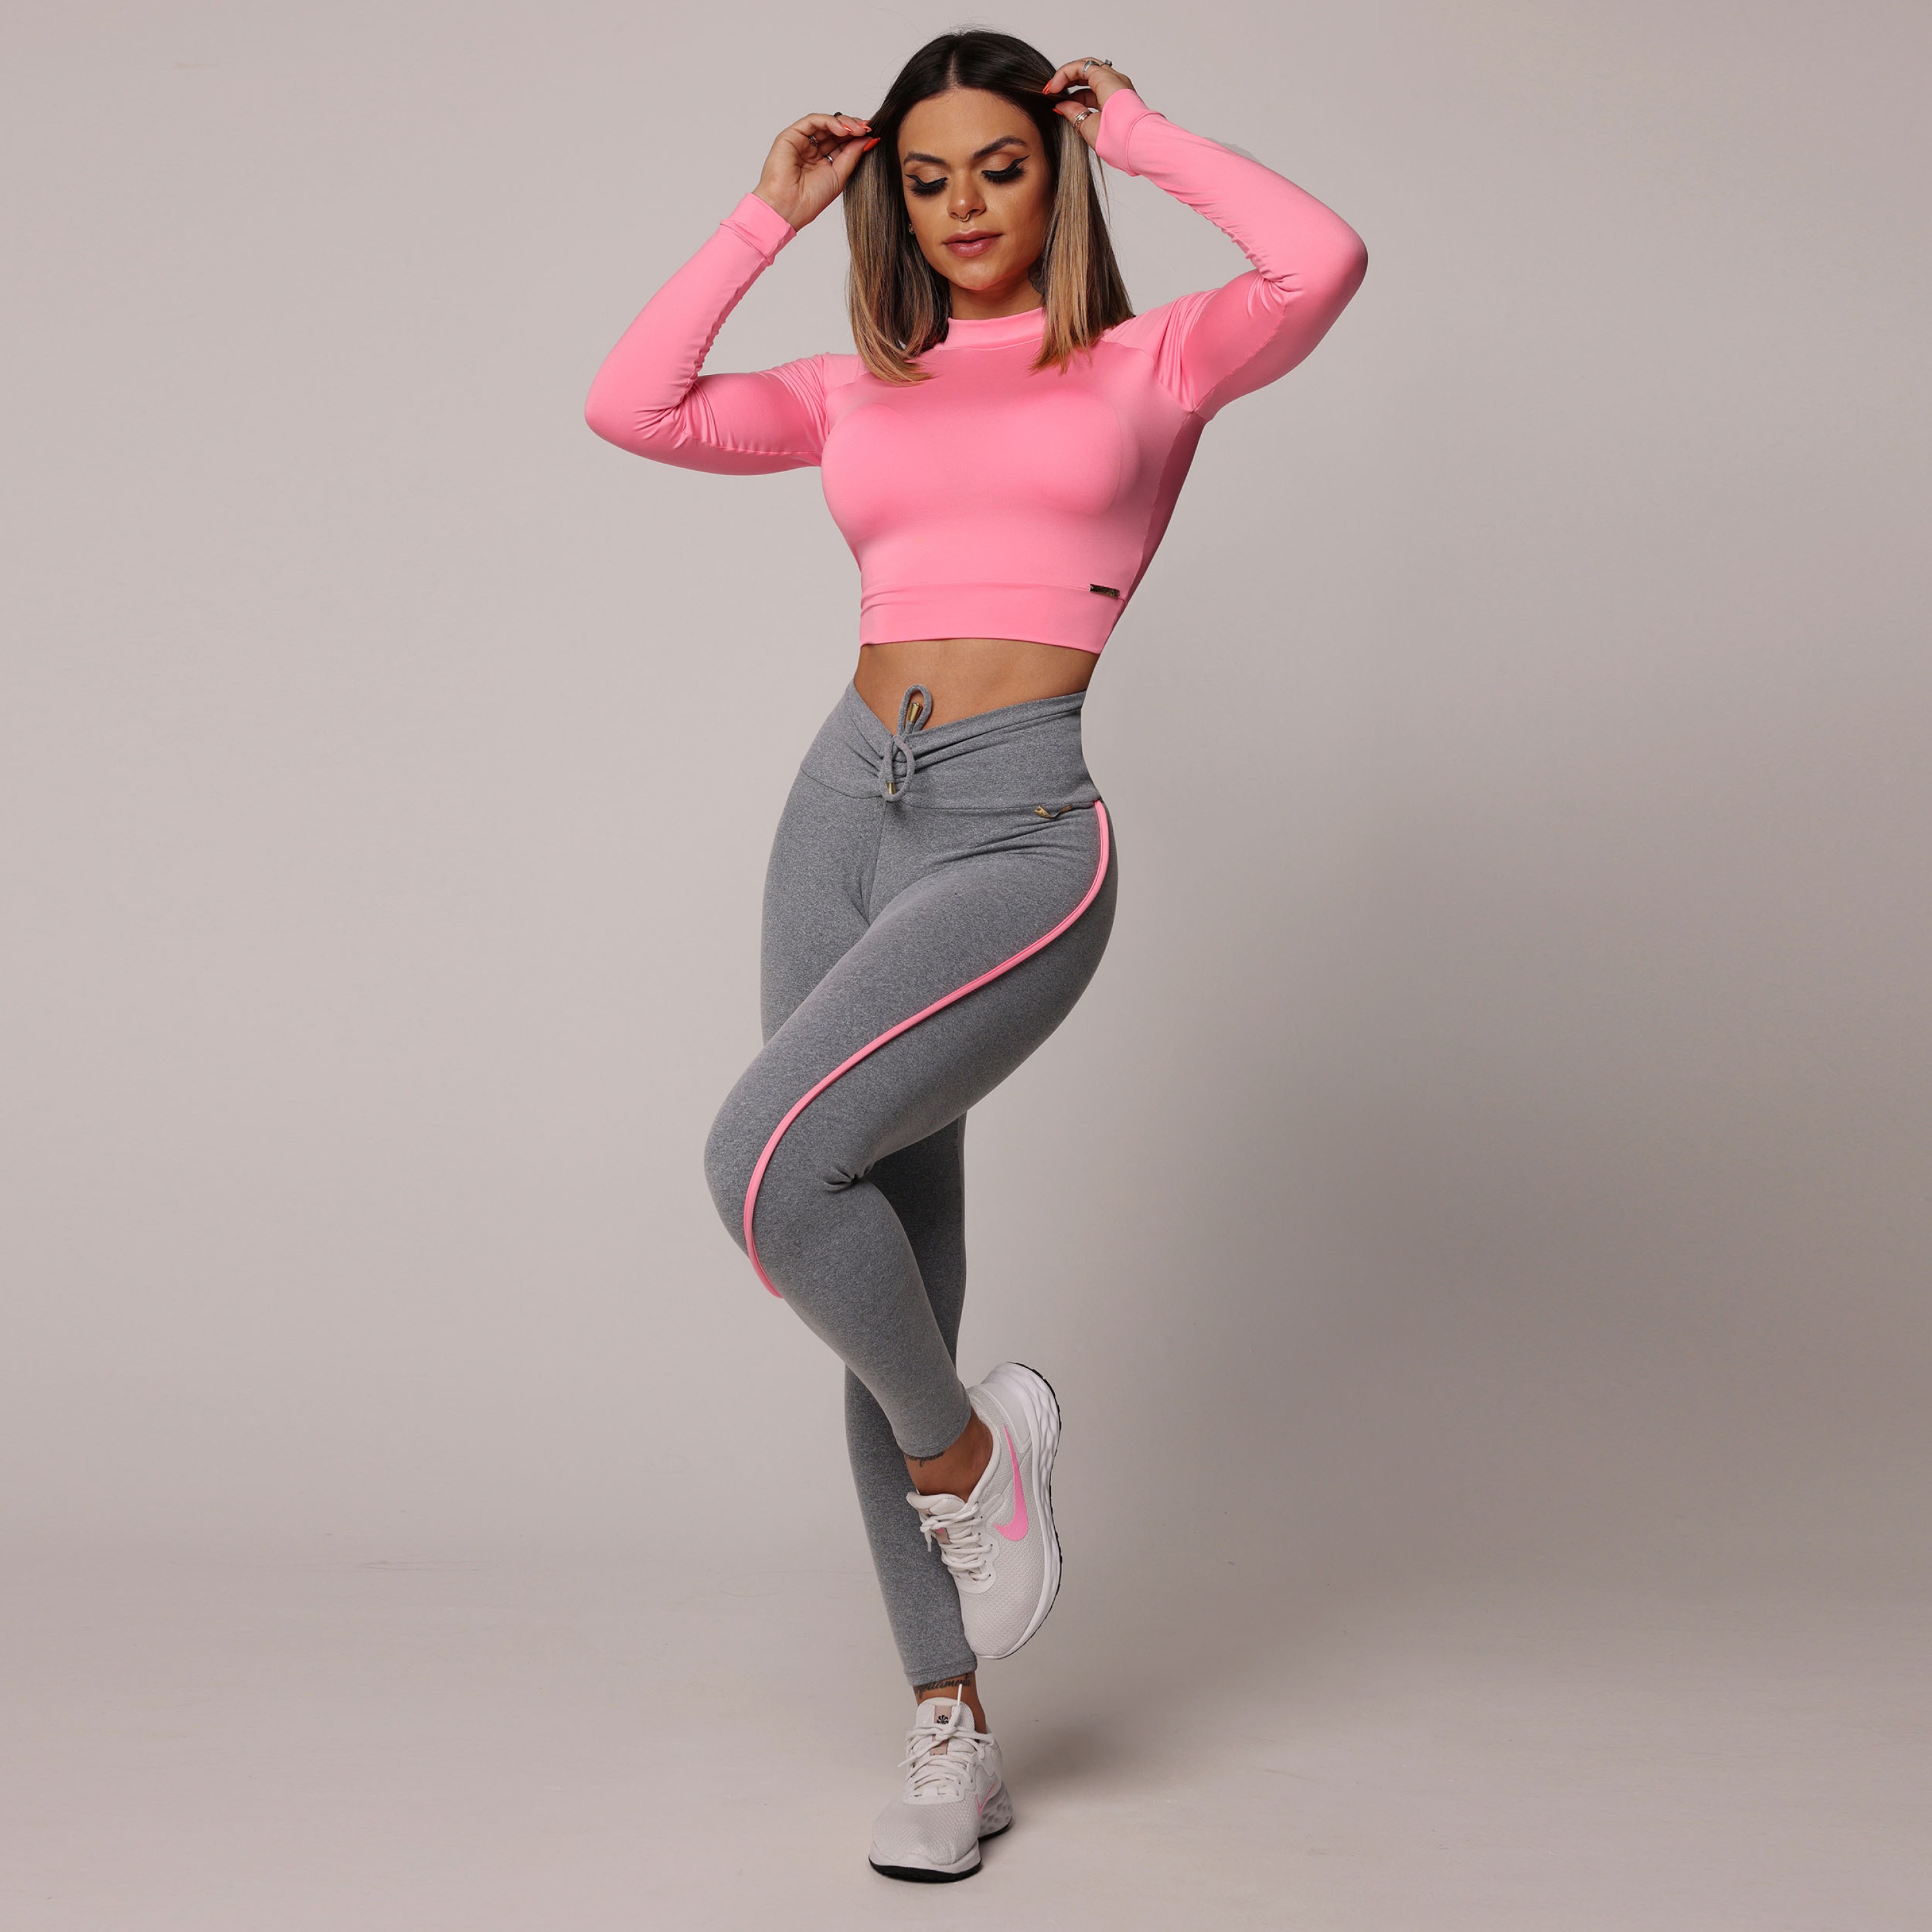 Legging Empina Bumbum (Pink) - P.S Moda Fitness